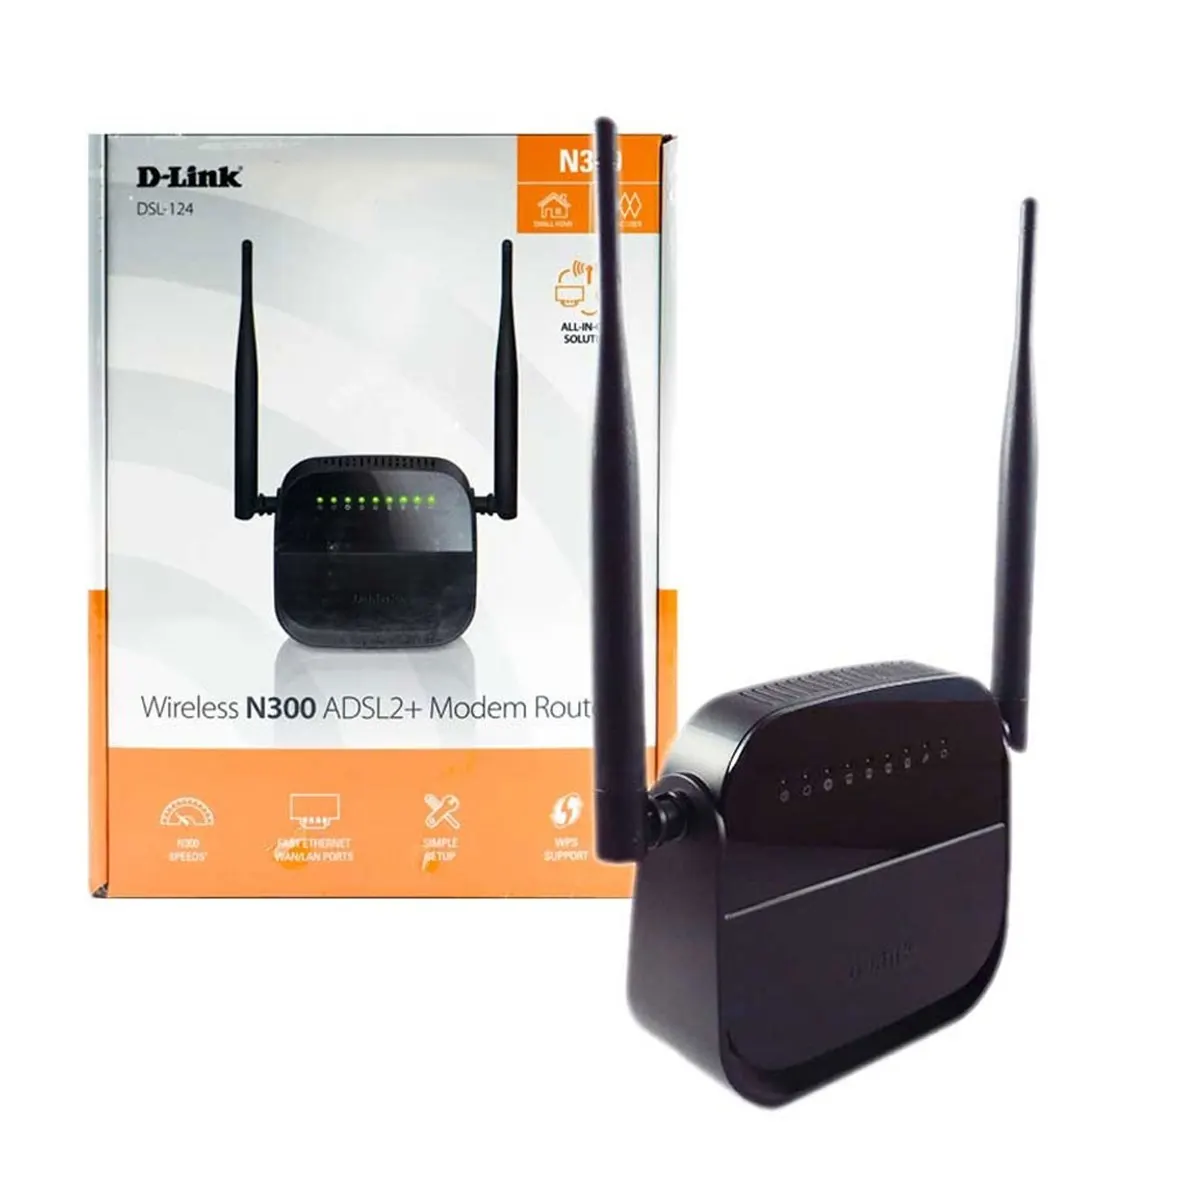 مودم - روتر دی لینک D-Link Wireless N 300 ADSL2+ DSL-124